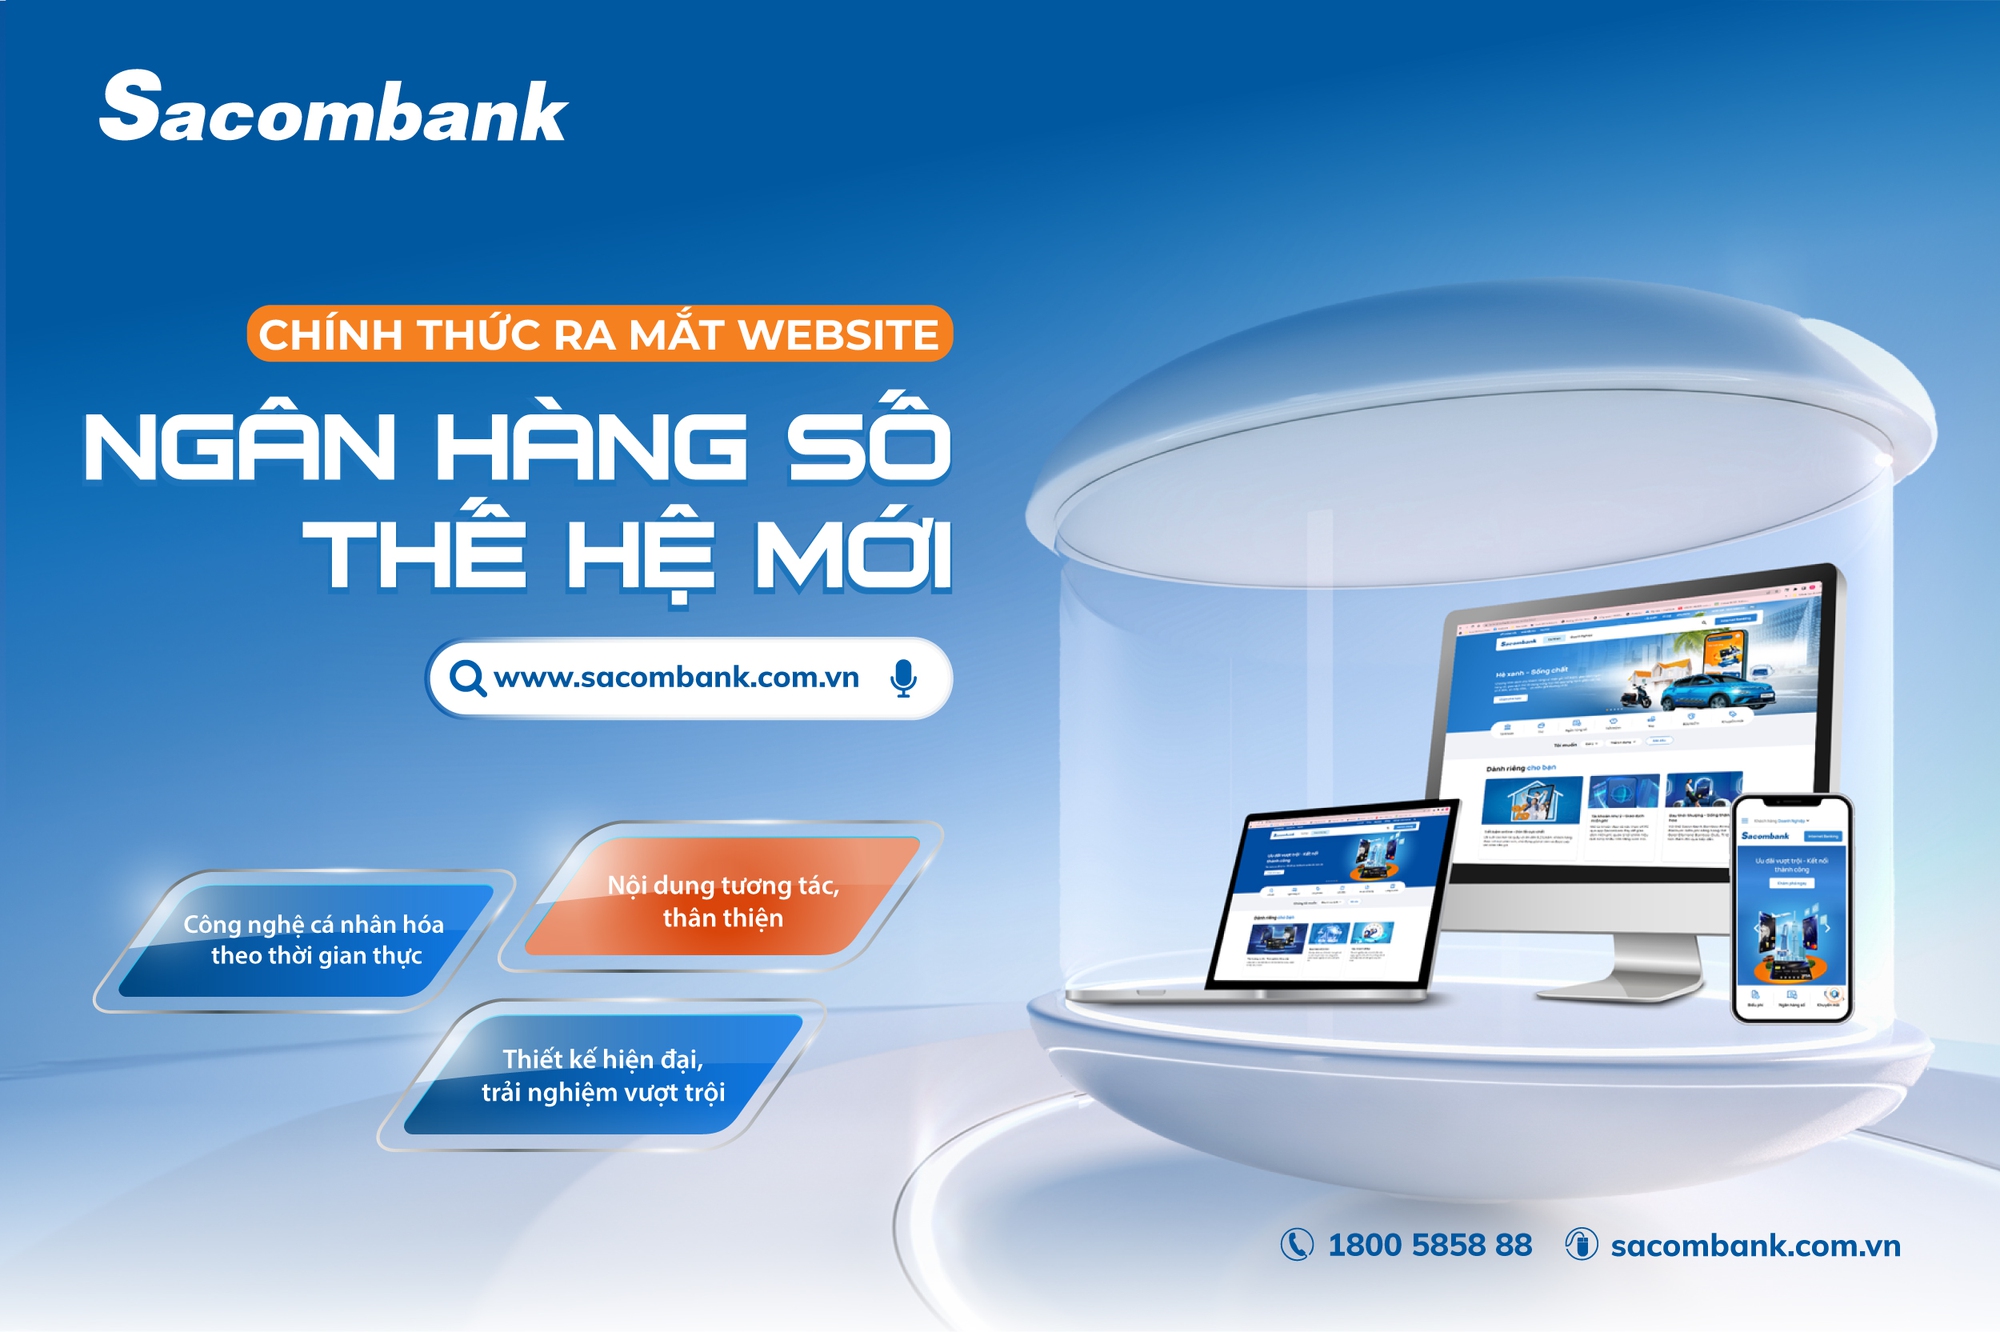 Sacombank ra mắt website Ngân hàng số thế hệ mới - Ảnh 1.